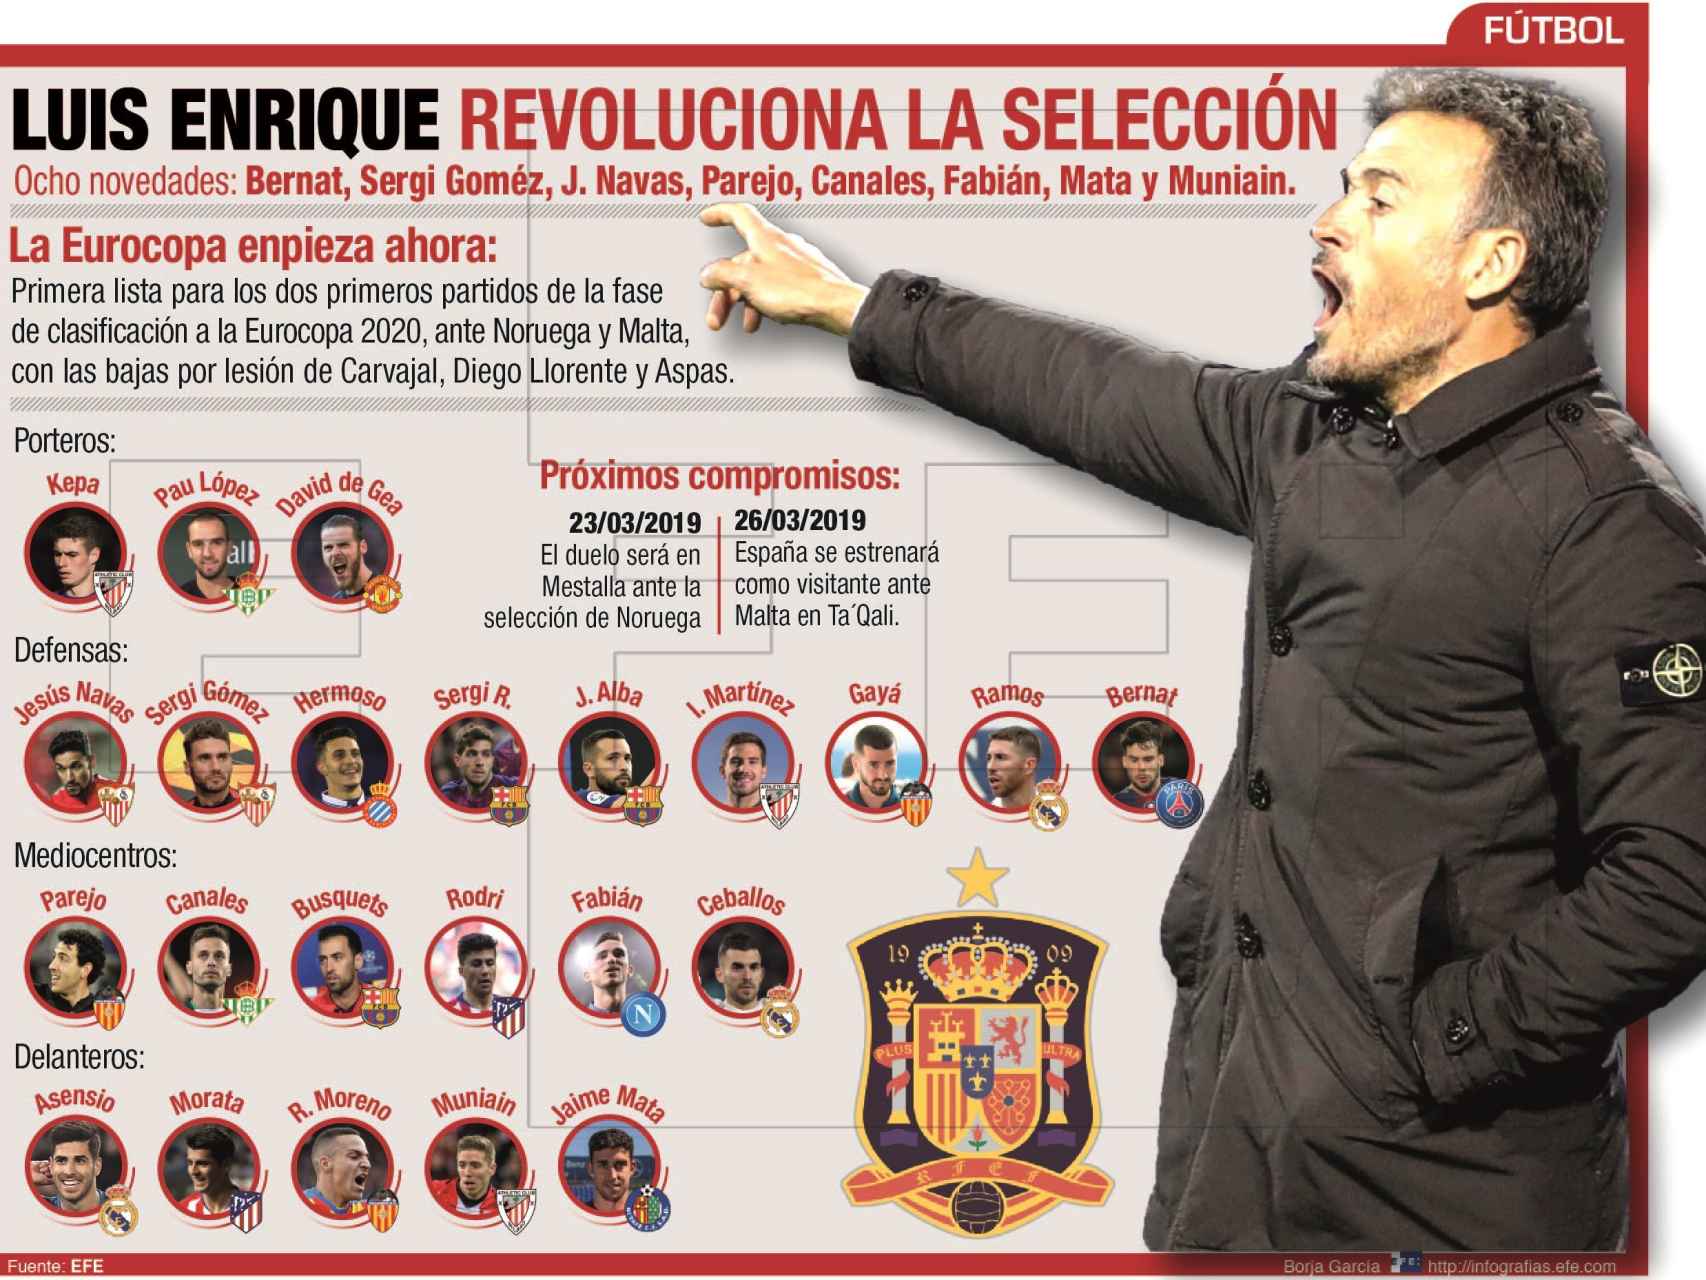 La revolución de Luis Enrique en la Selección